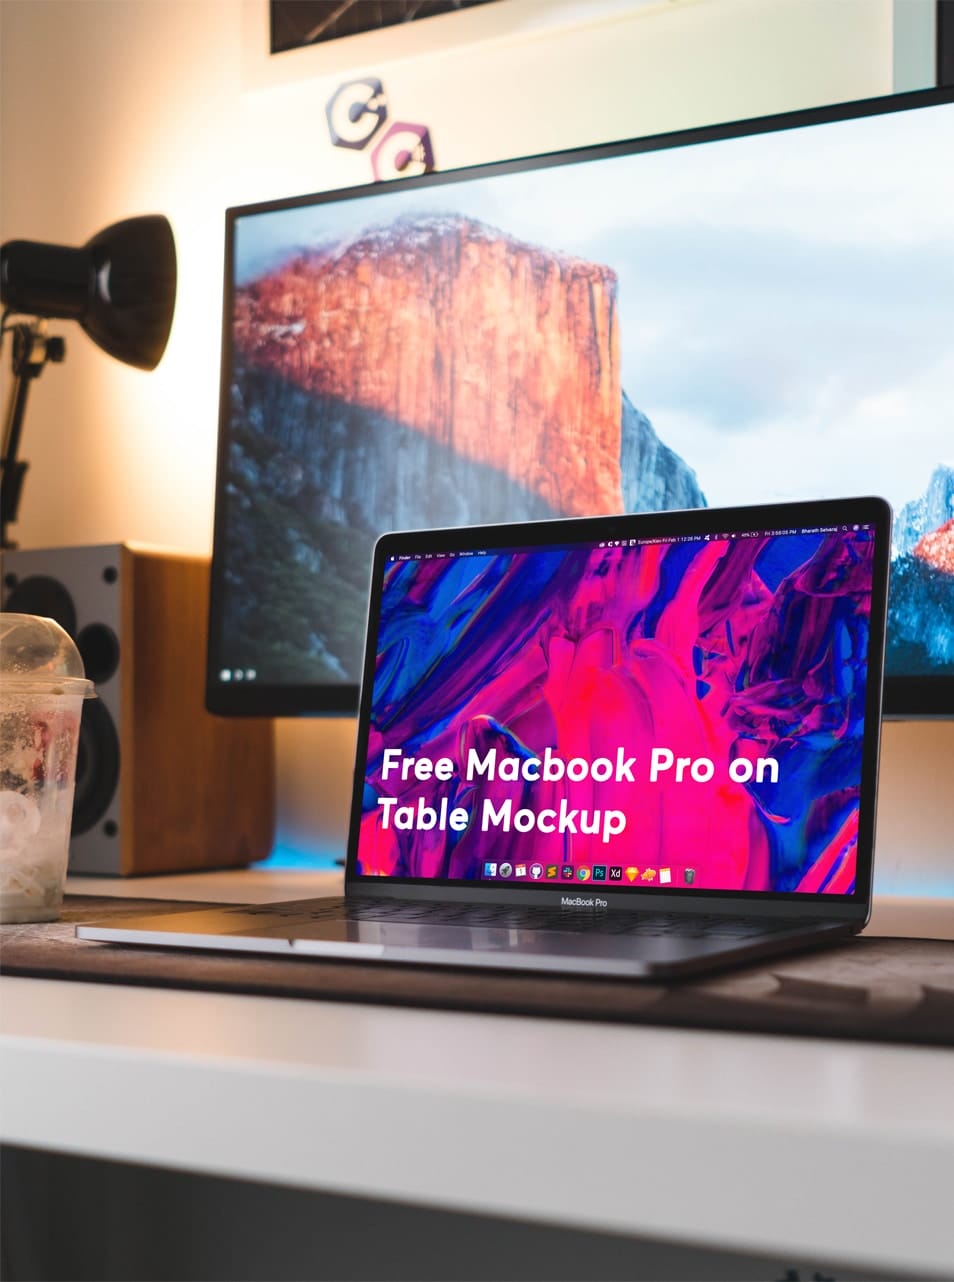 Free Macbook Pro on Table Mockup